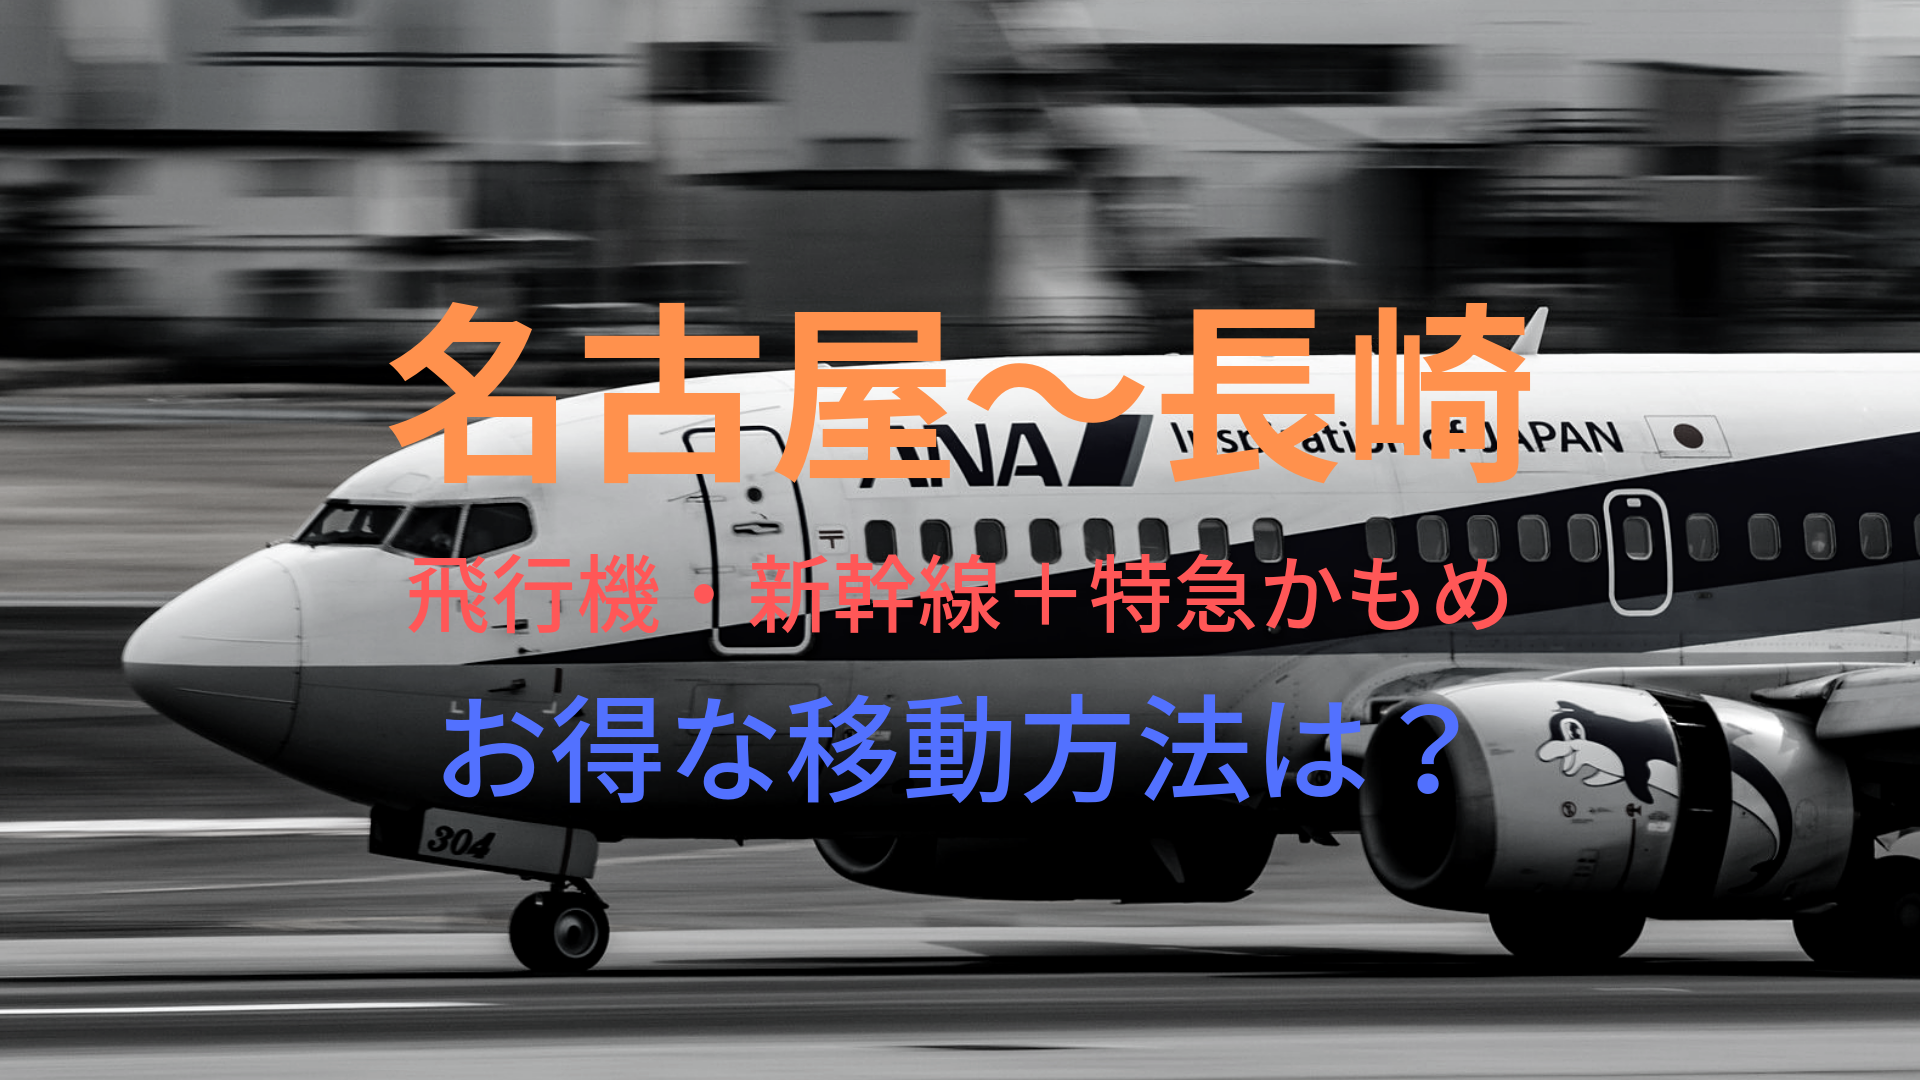 名古屋 長崎 円 格安で移動する方法は 飛行機 新幹線 特急かもめをそれぞれ比較 ばしたく交通